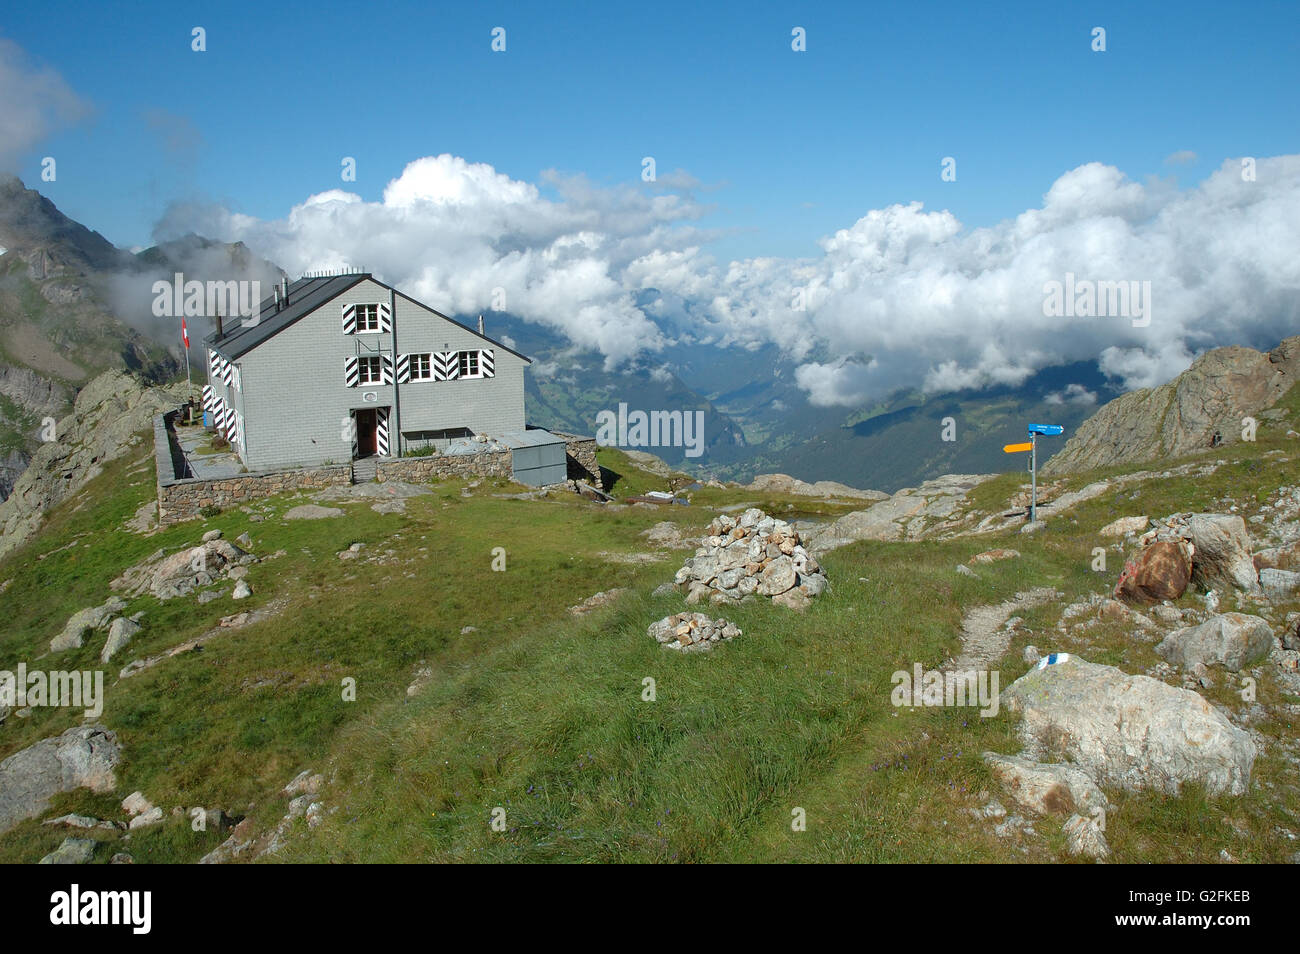 Grindelwald, Suisse - le 21 août 2014 : Glecksteinhutte à proximité auberge de montagne Alpes de Grindelwald en Suisse. Banque D'Images